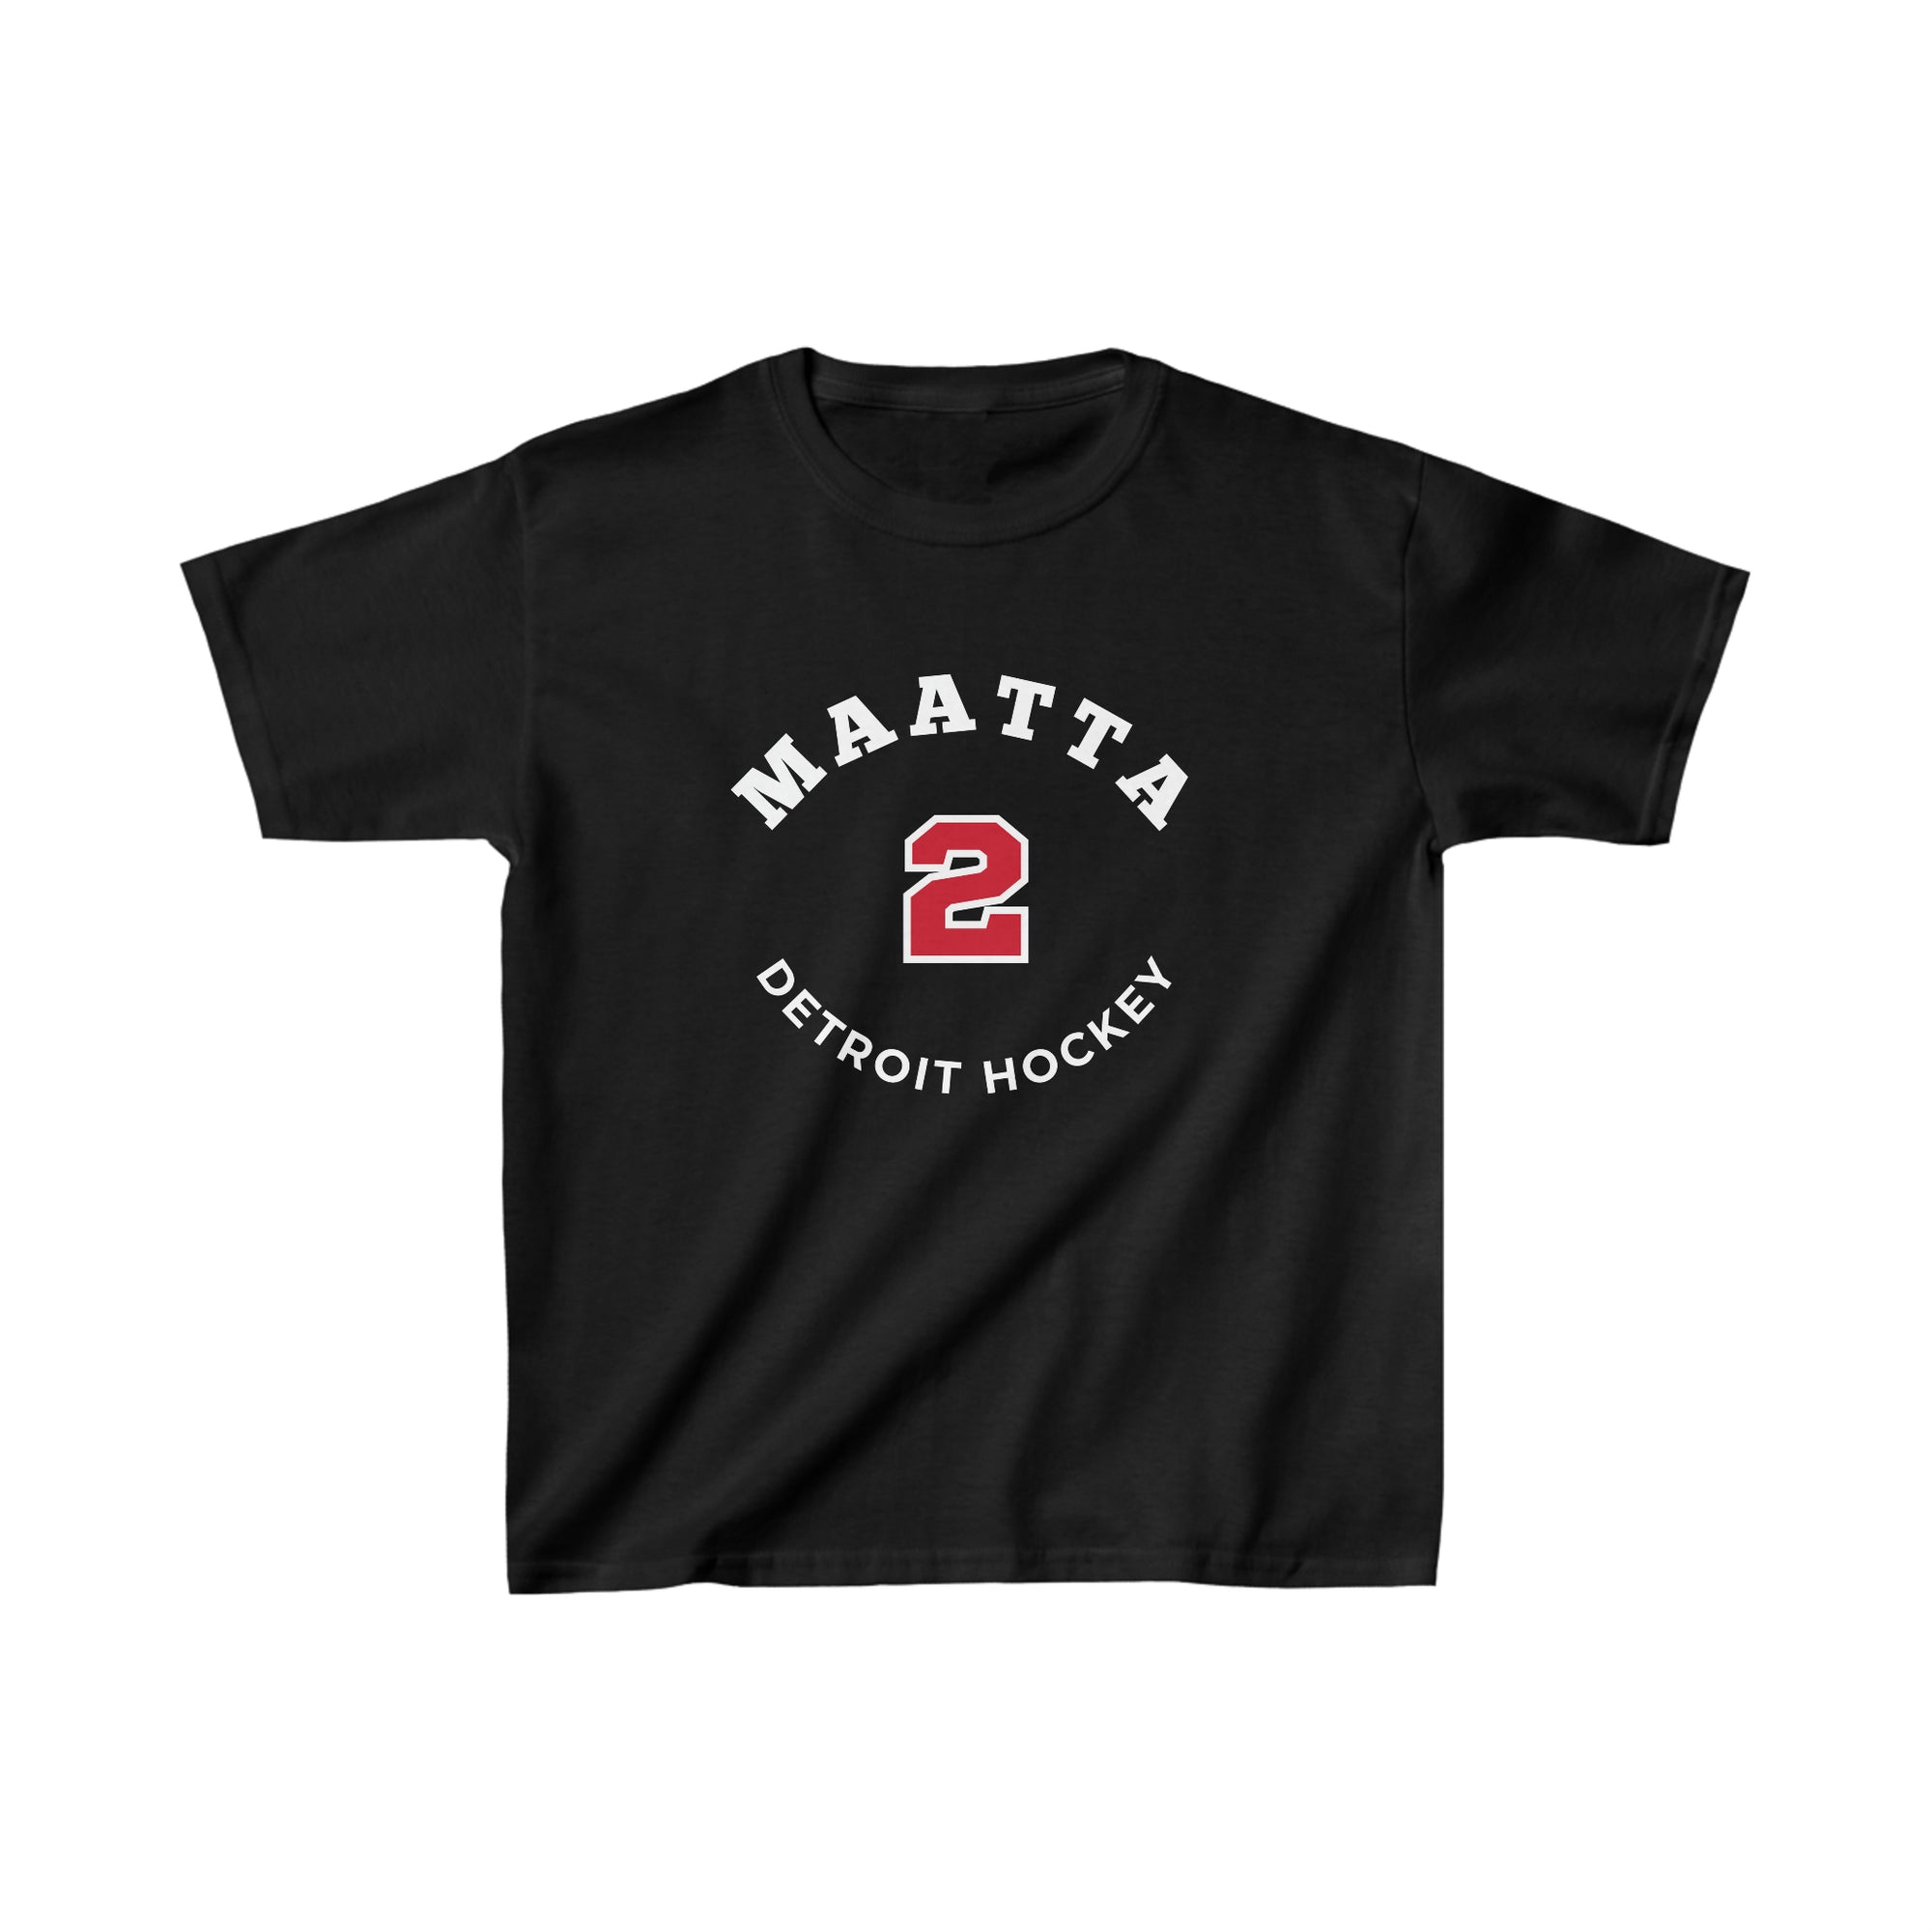 Maatta 2 Detroit Hockey Number Arch Design Kids Tee